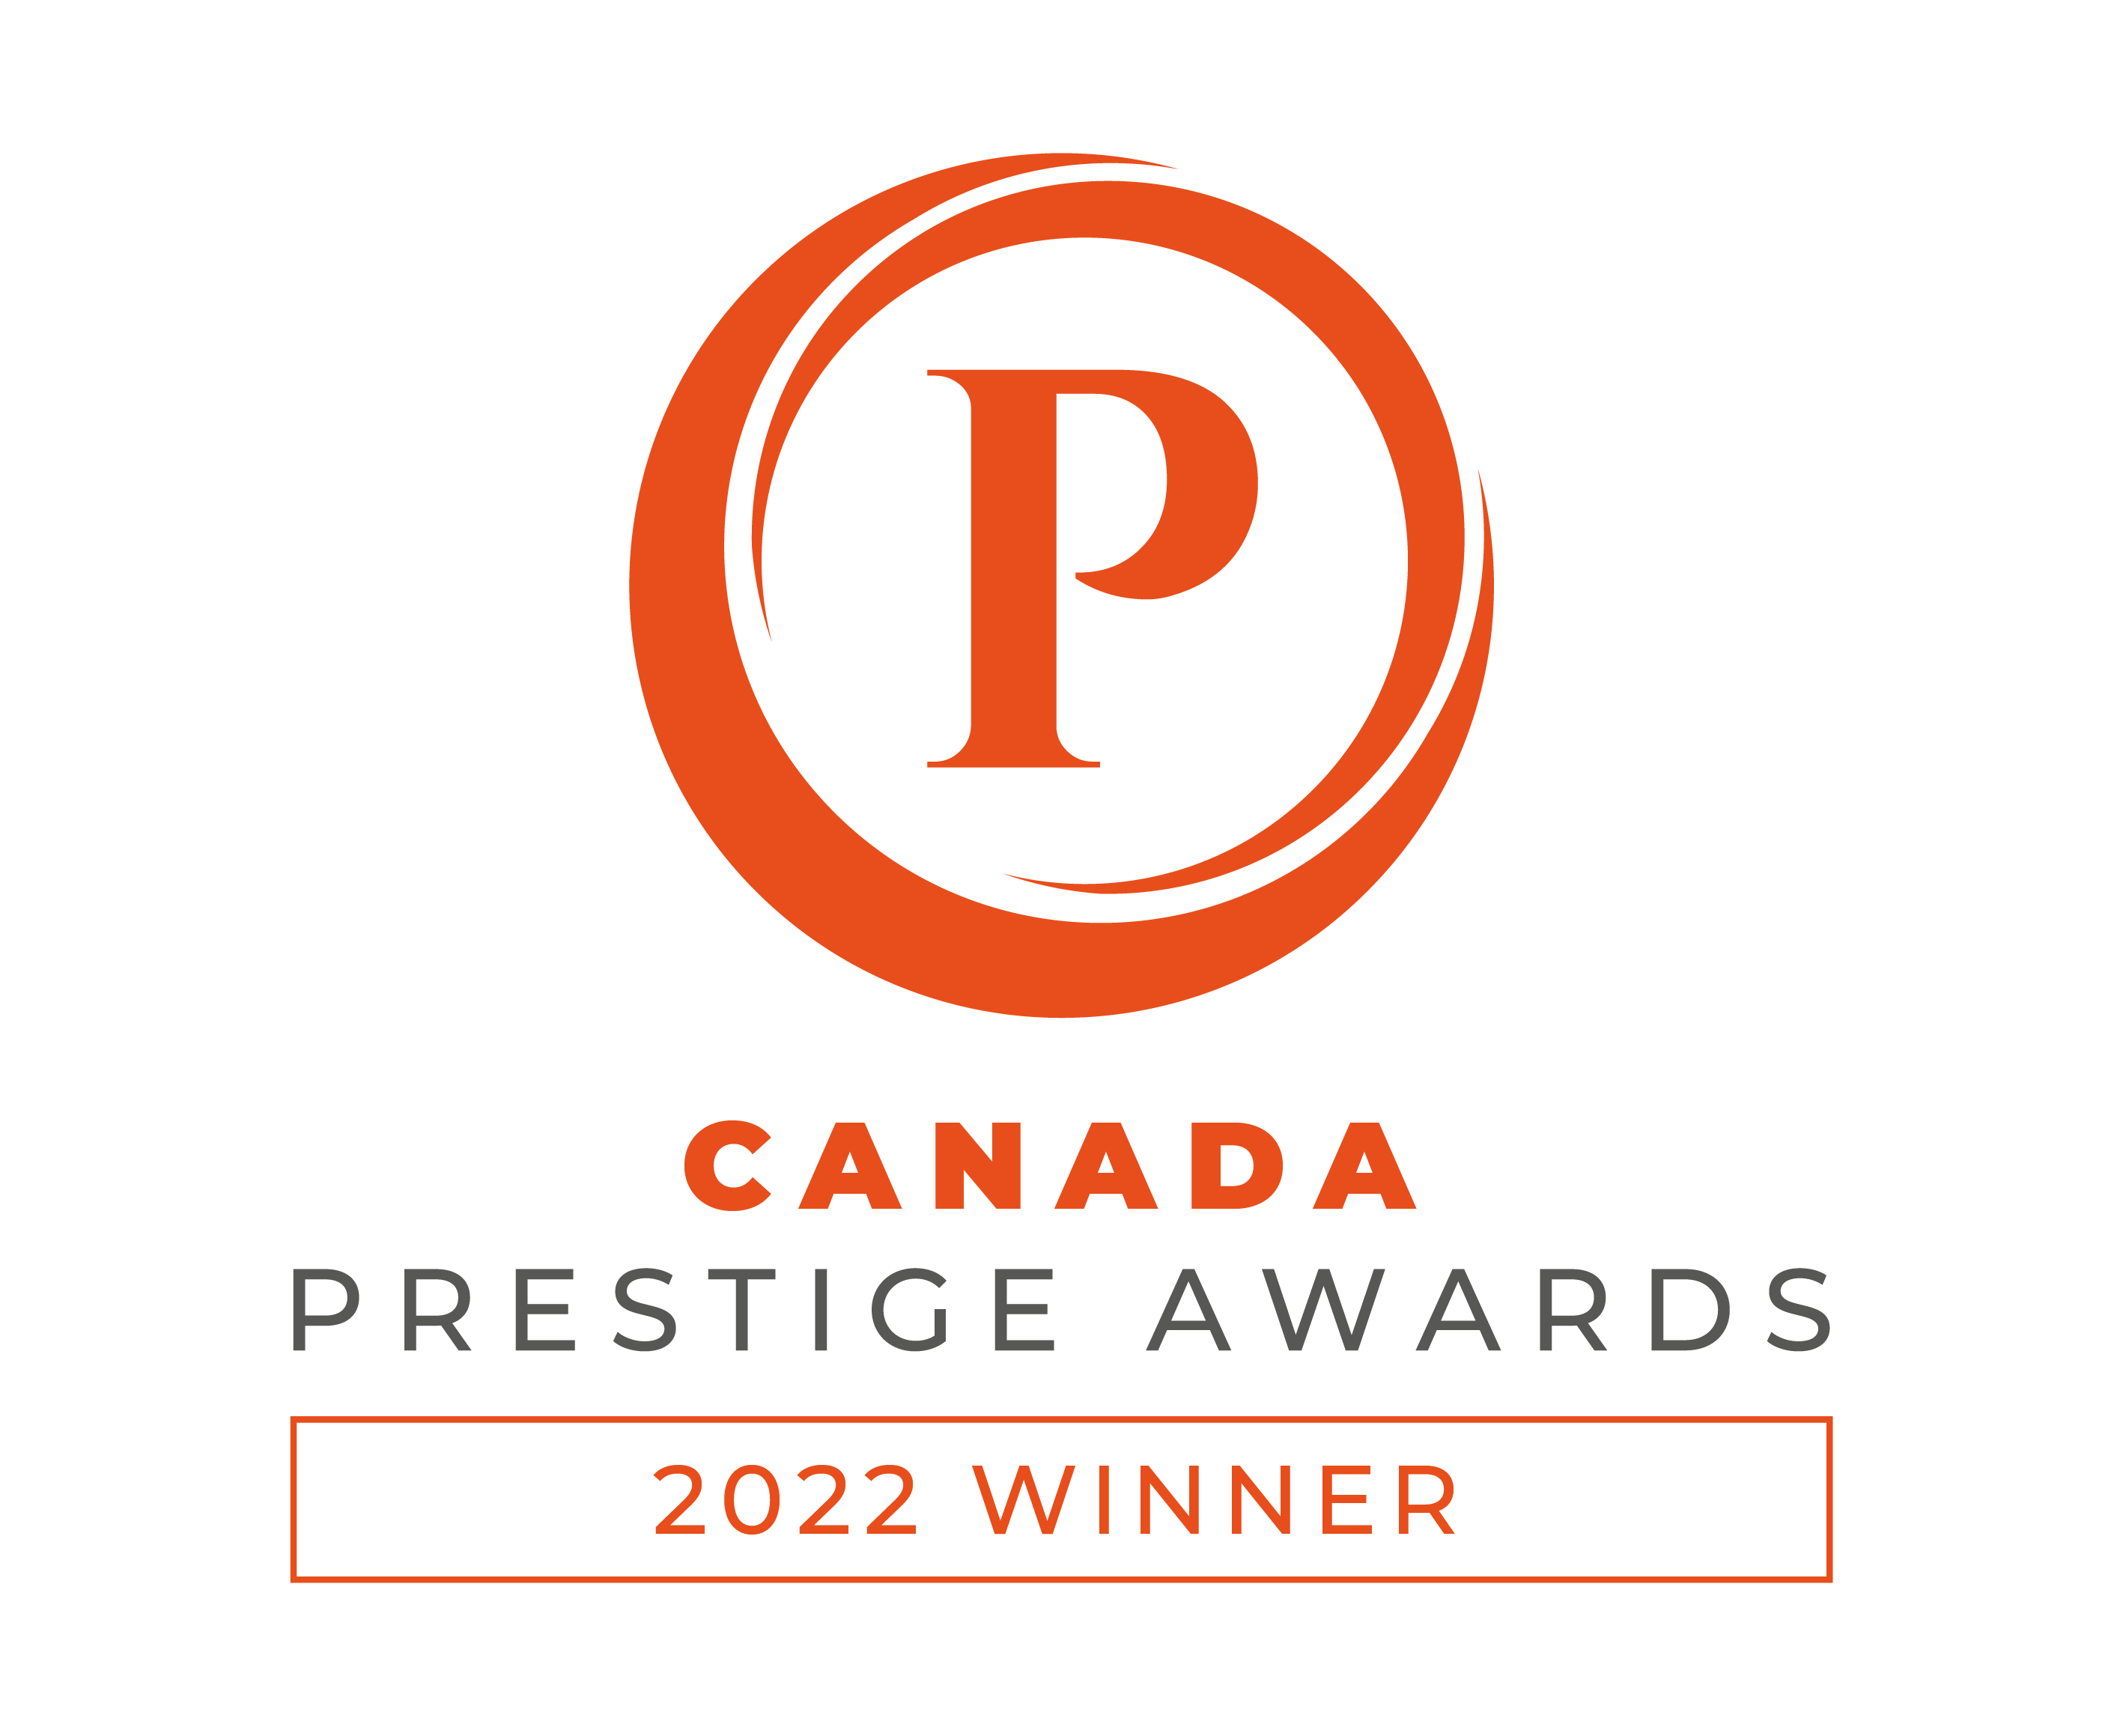 Canada-Prestige-Awards-2022-winner-logo